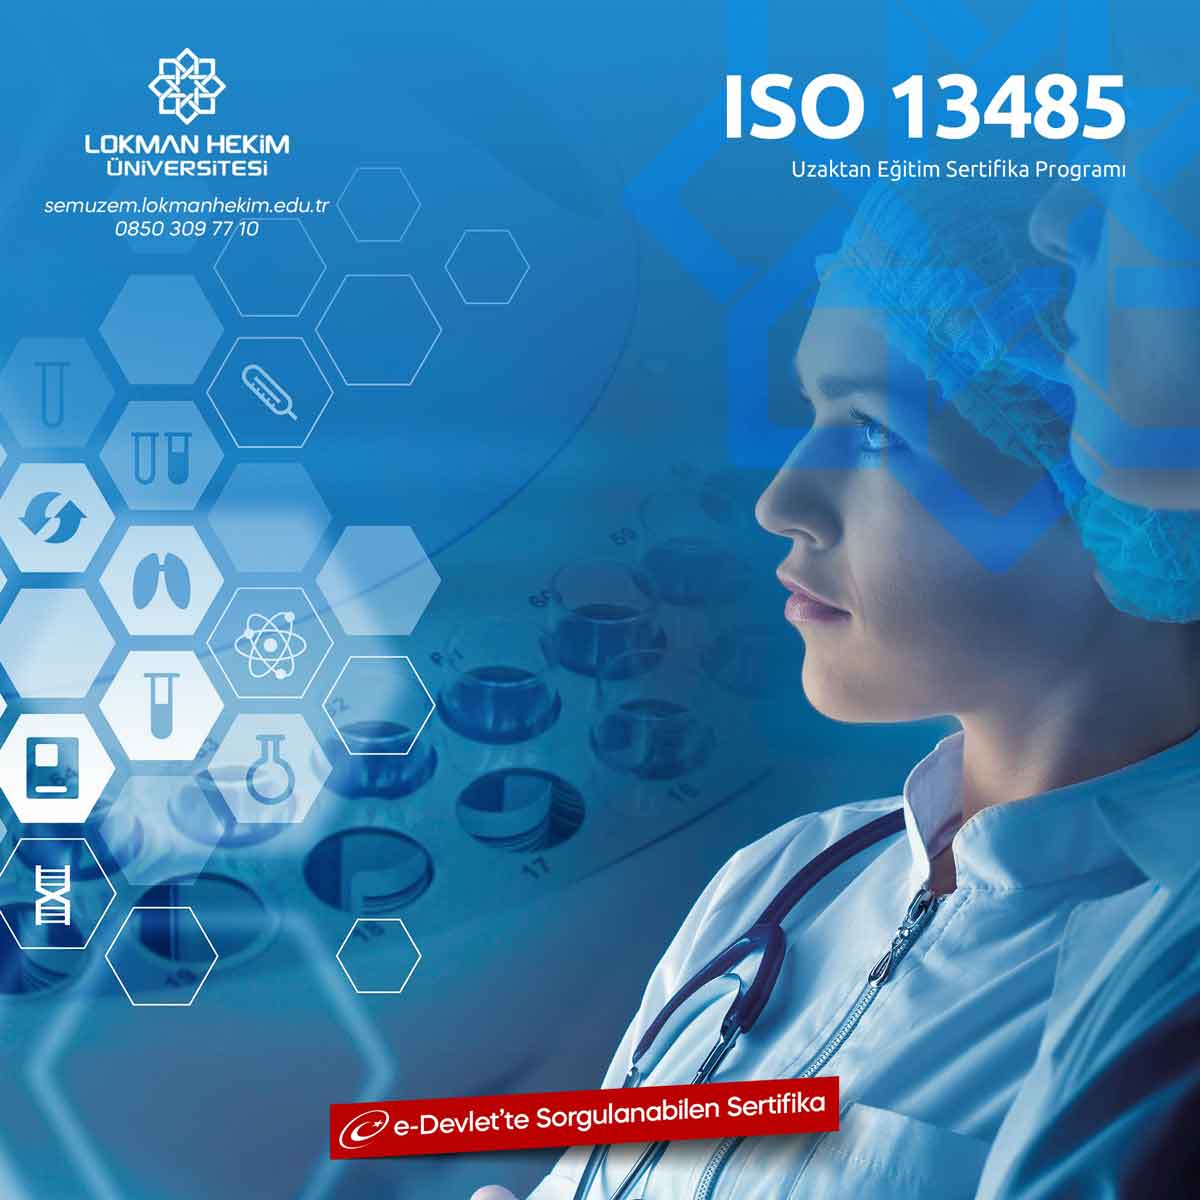 ISO 13485 Eğitimi Nedir